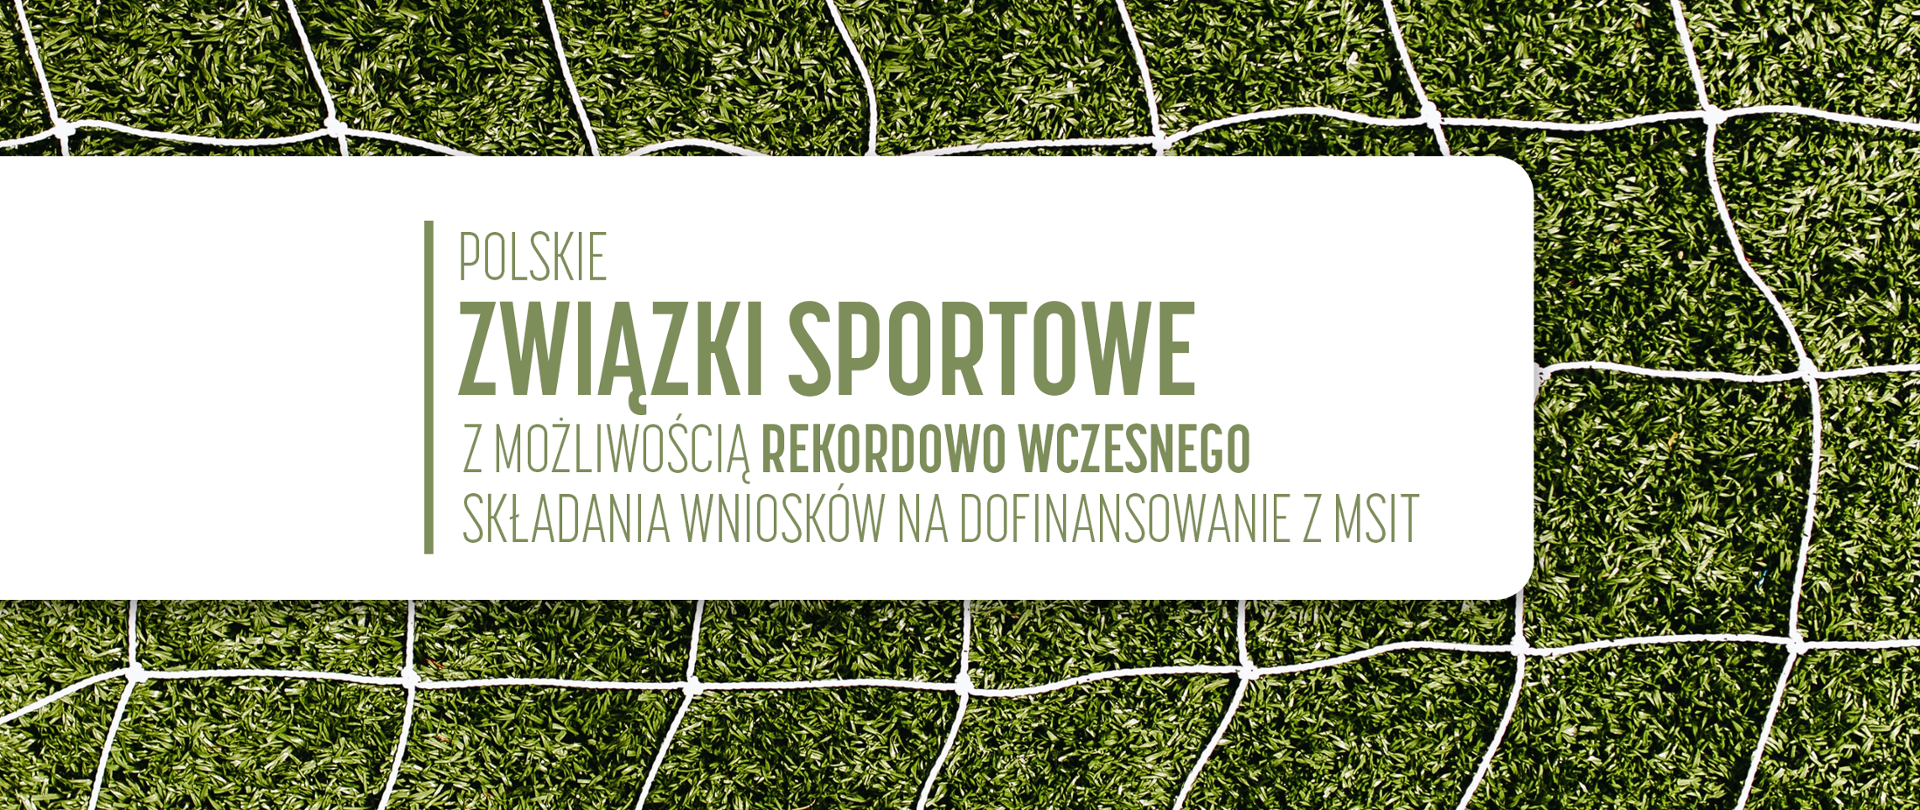 polskie związki sportowe będą mogły najwcześniej w historii podpisywać umowy na realizację zadań
